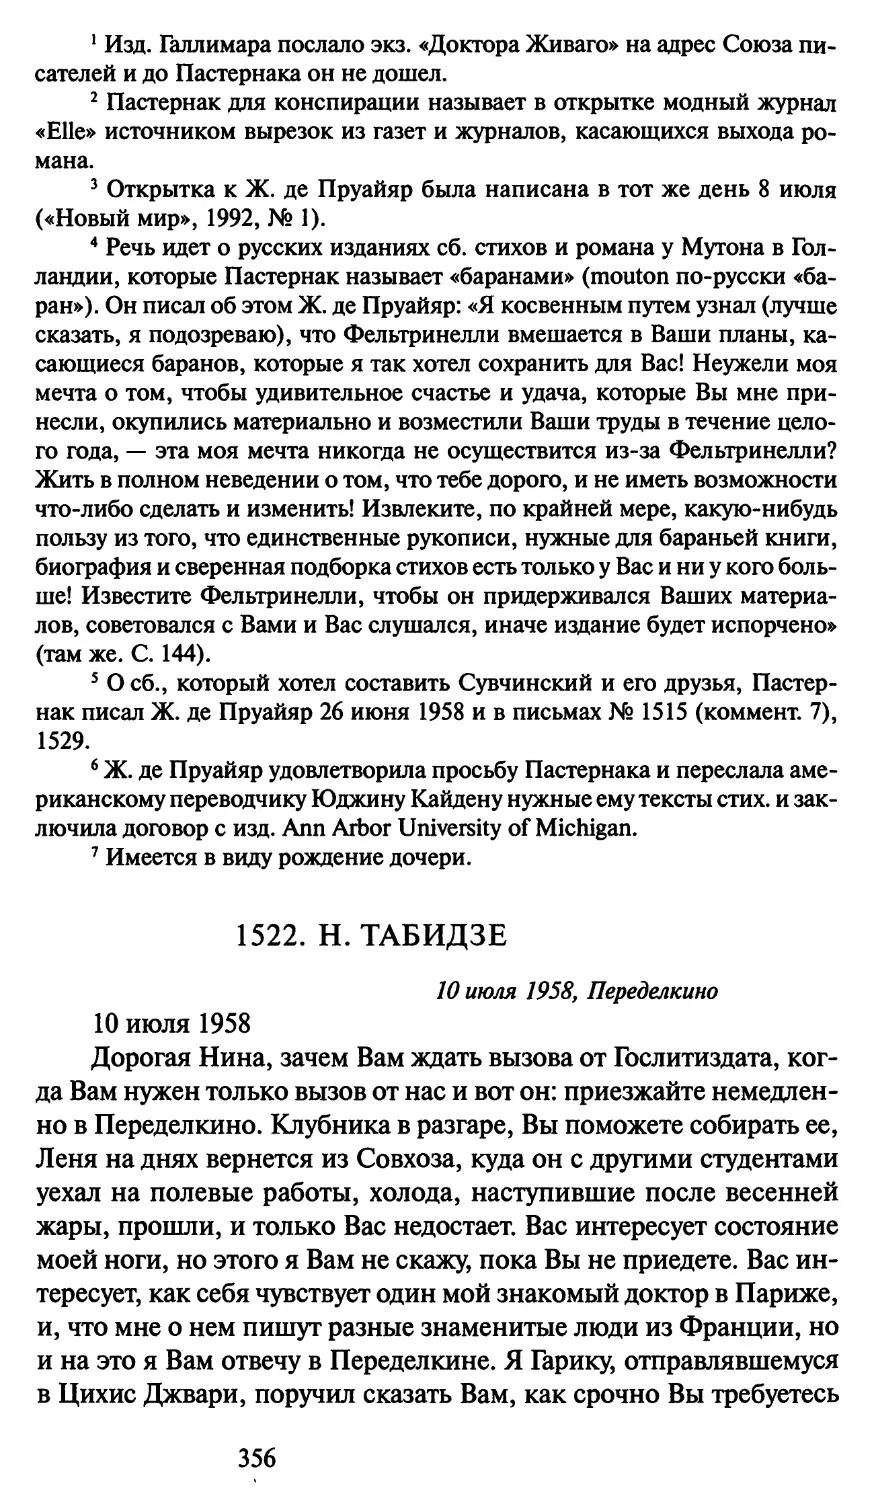 1522. Н. Табидзе 10 июля 1958